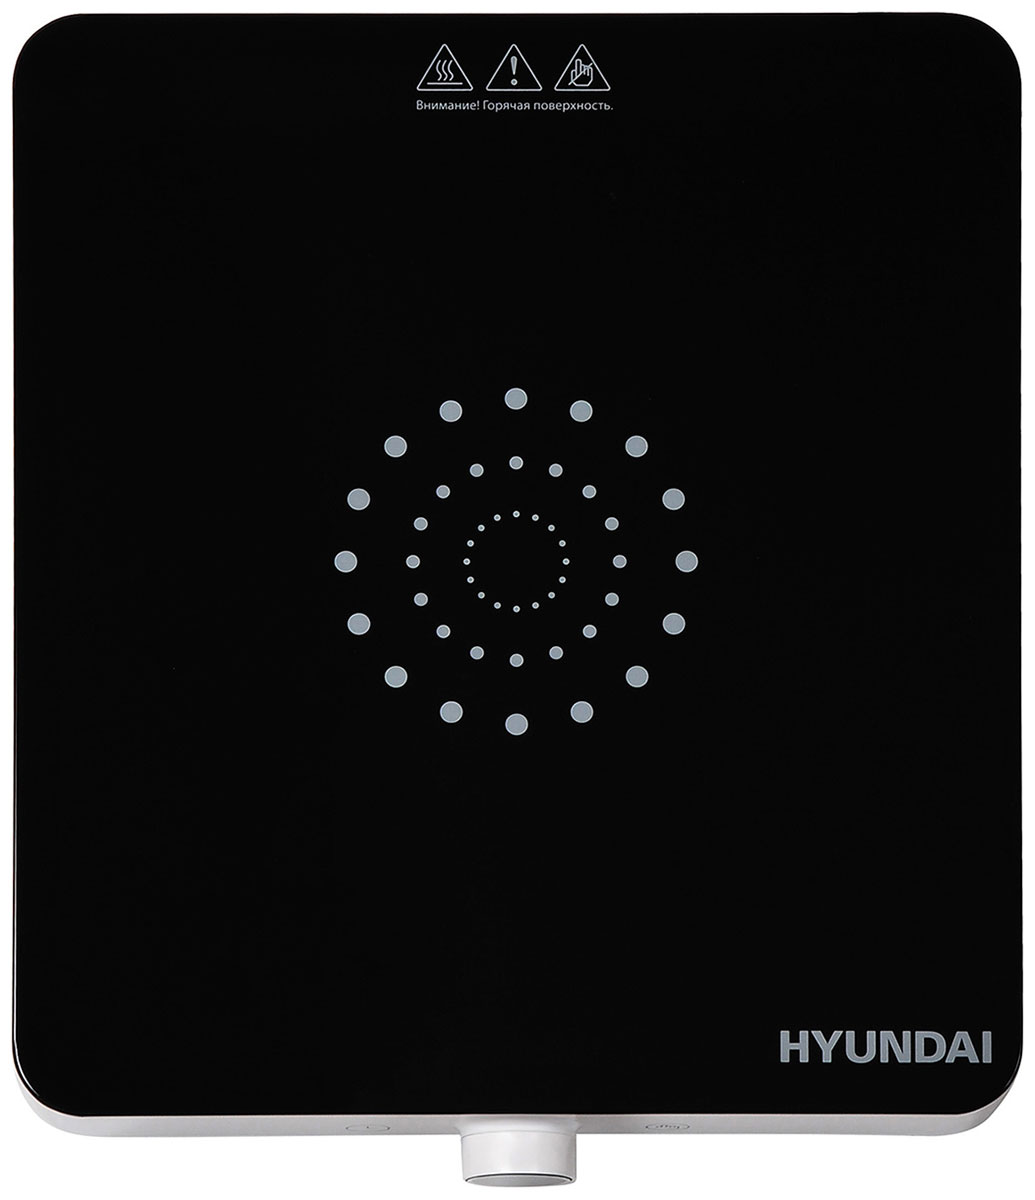 Индукционная плита Hyundai HYC-0105 белый стеклокерамика плита индукционная hyc 0108 настольная бел стеклокерамика hyundai 1358611 1 шт